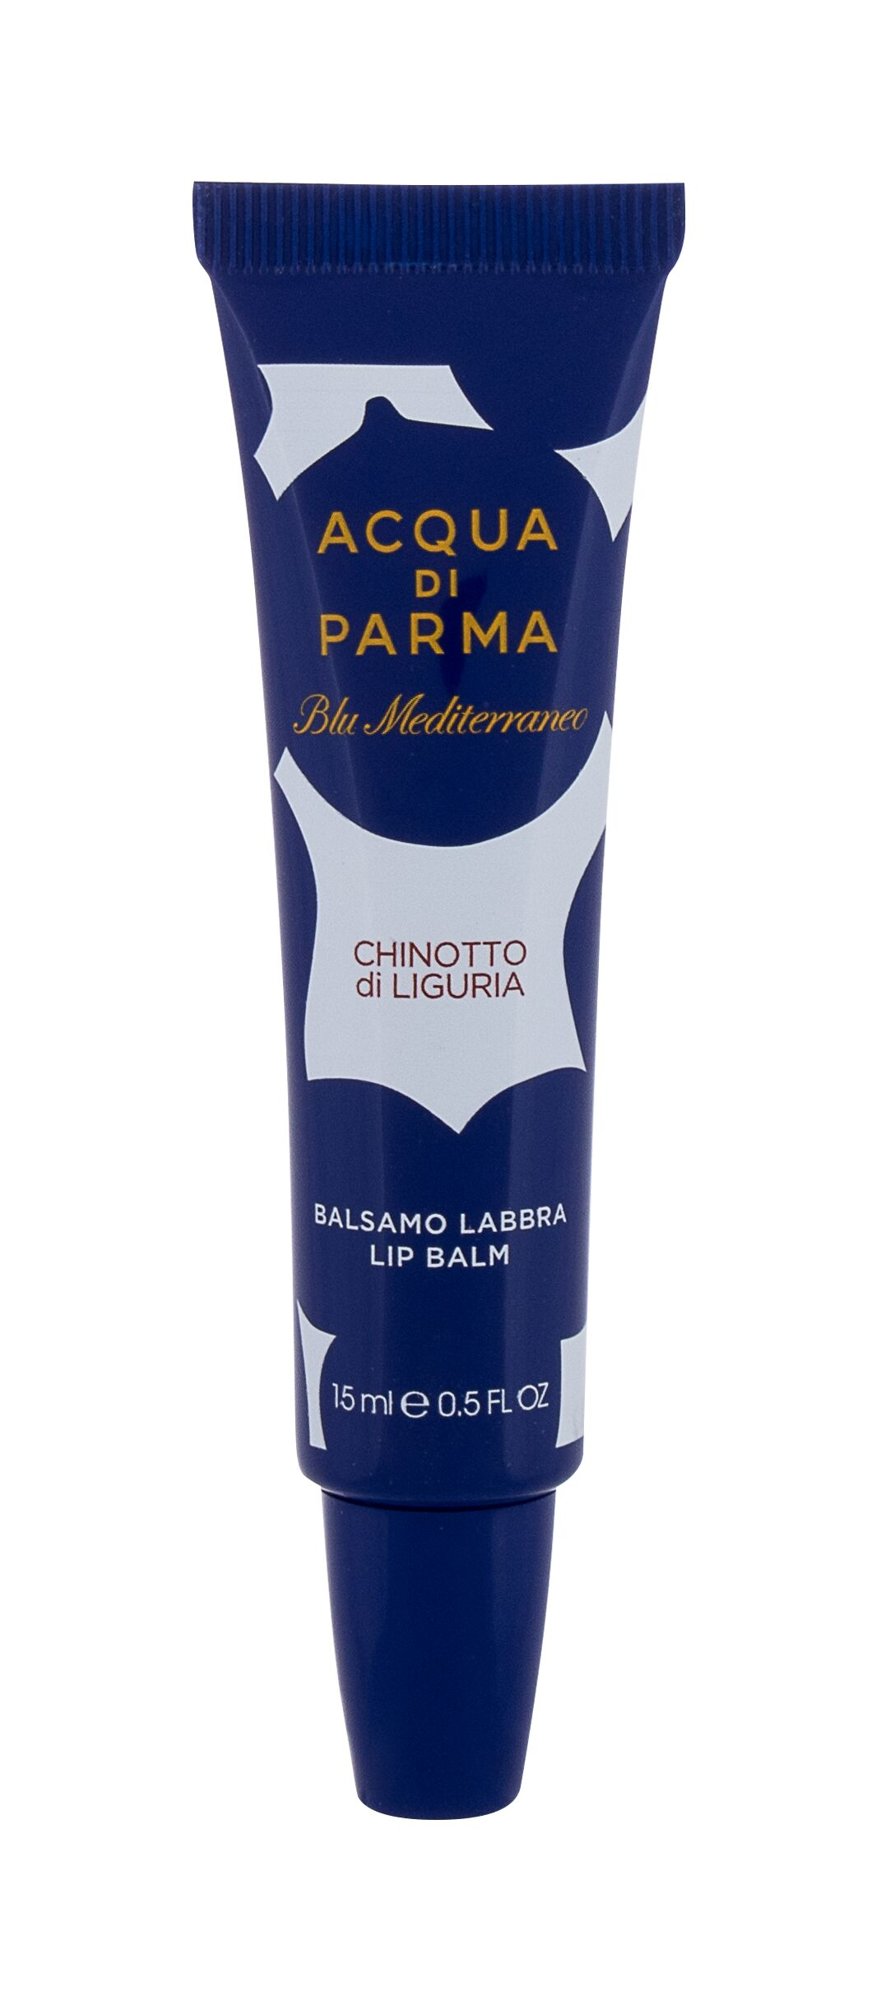 Acqua Di Parma Blu Mediterraneo Chinotto di Liguria 15ml NIŠINIAI lūpų balzamas